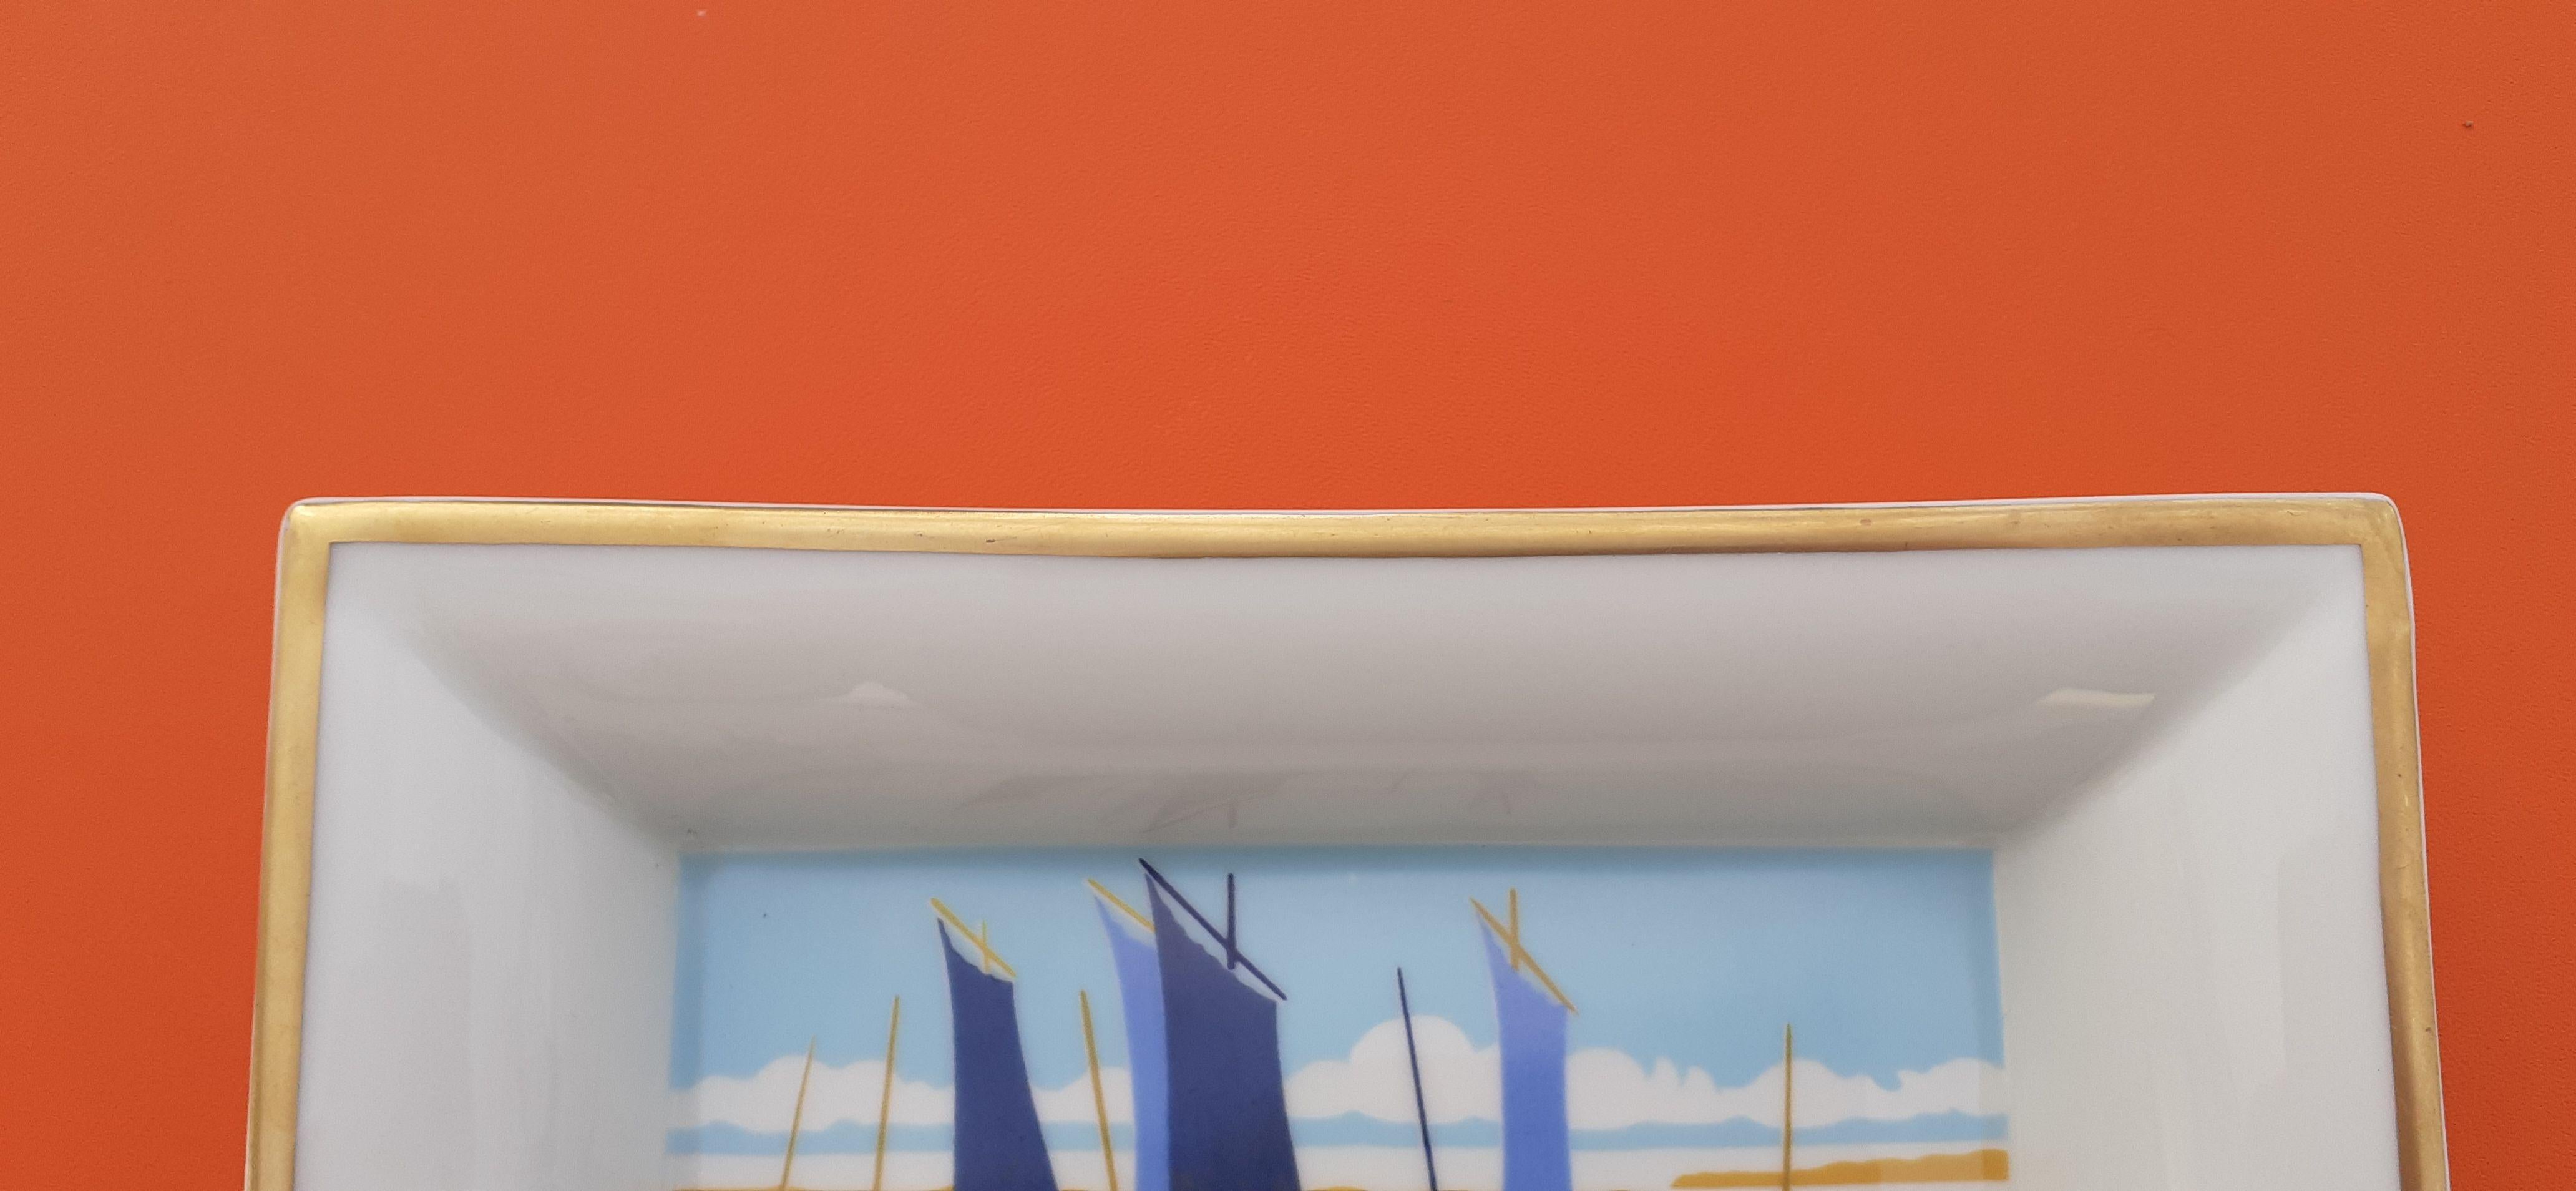 Hermès Cigar Ashtray Change Tray Small Boats Sailing Ships Print in Porcelain 1